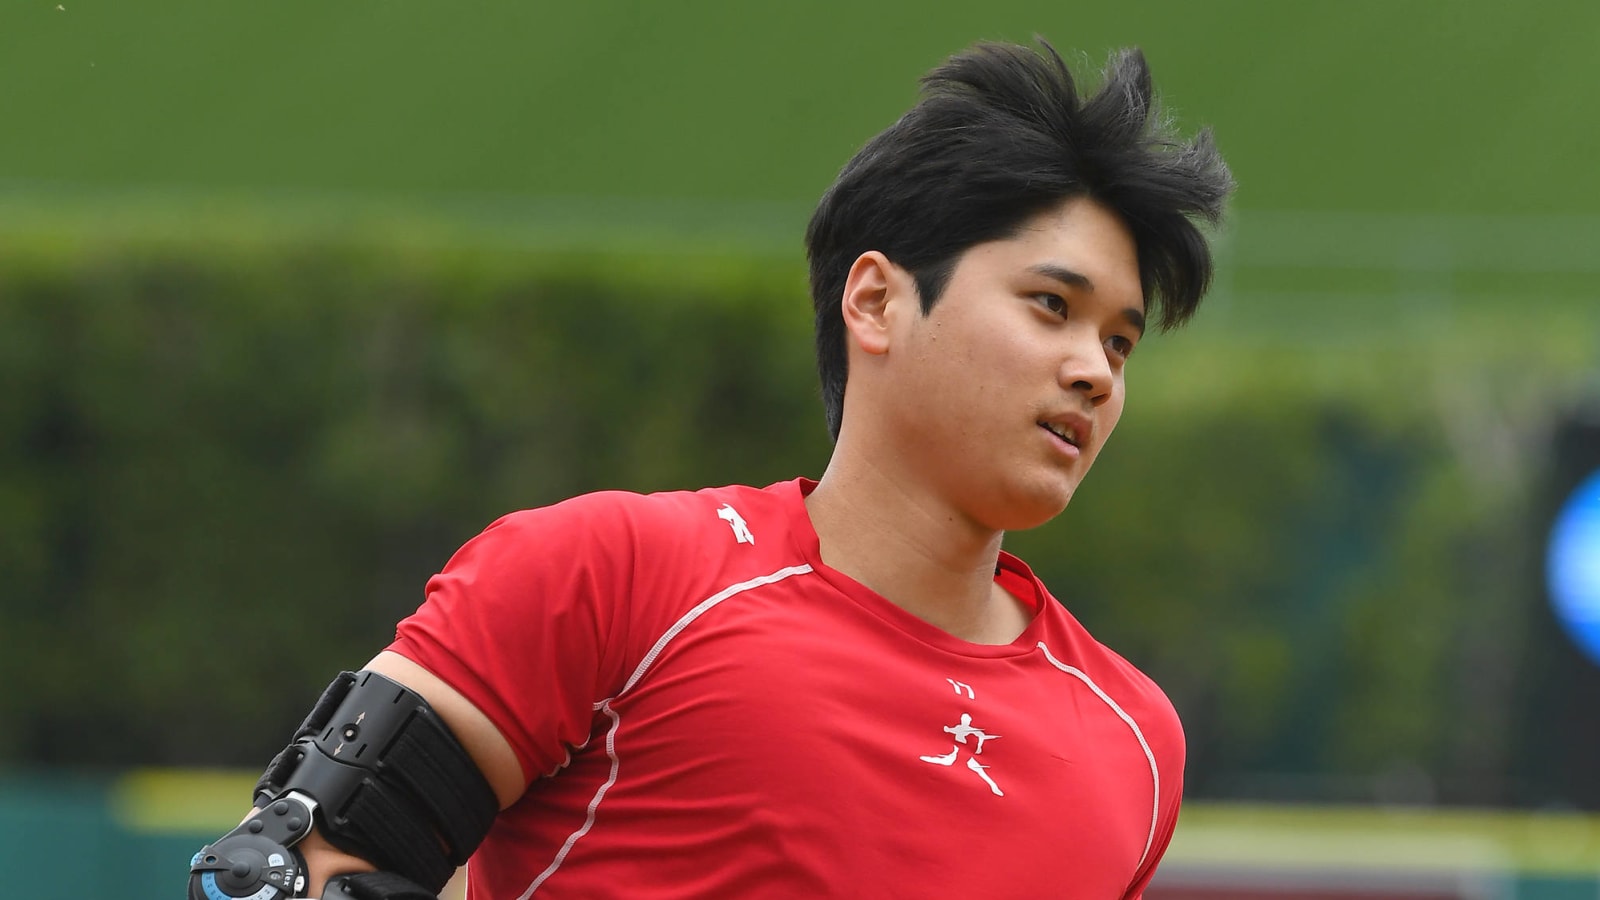 Shohei Ohtani's elbow injury creates seismic shift in his future